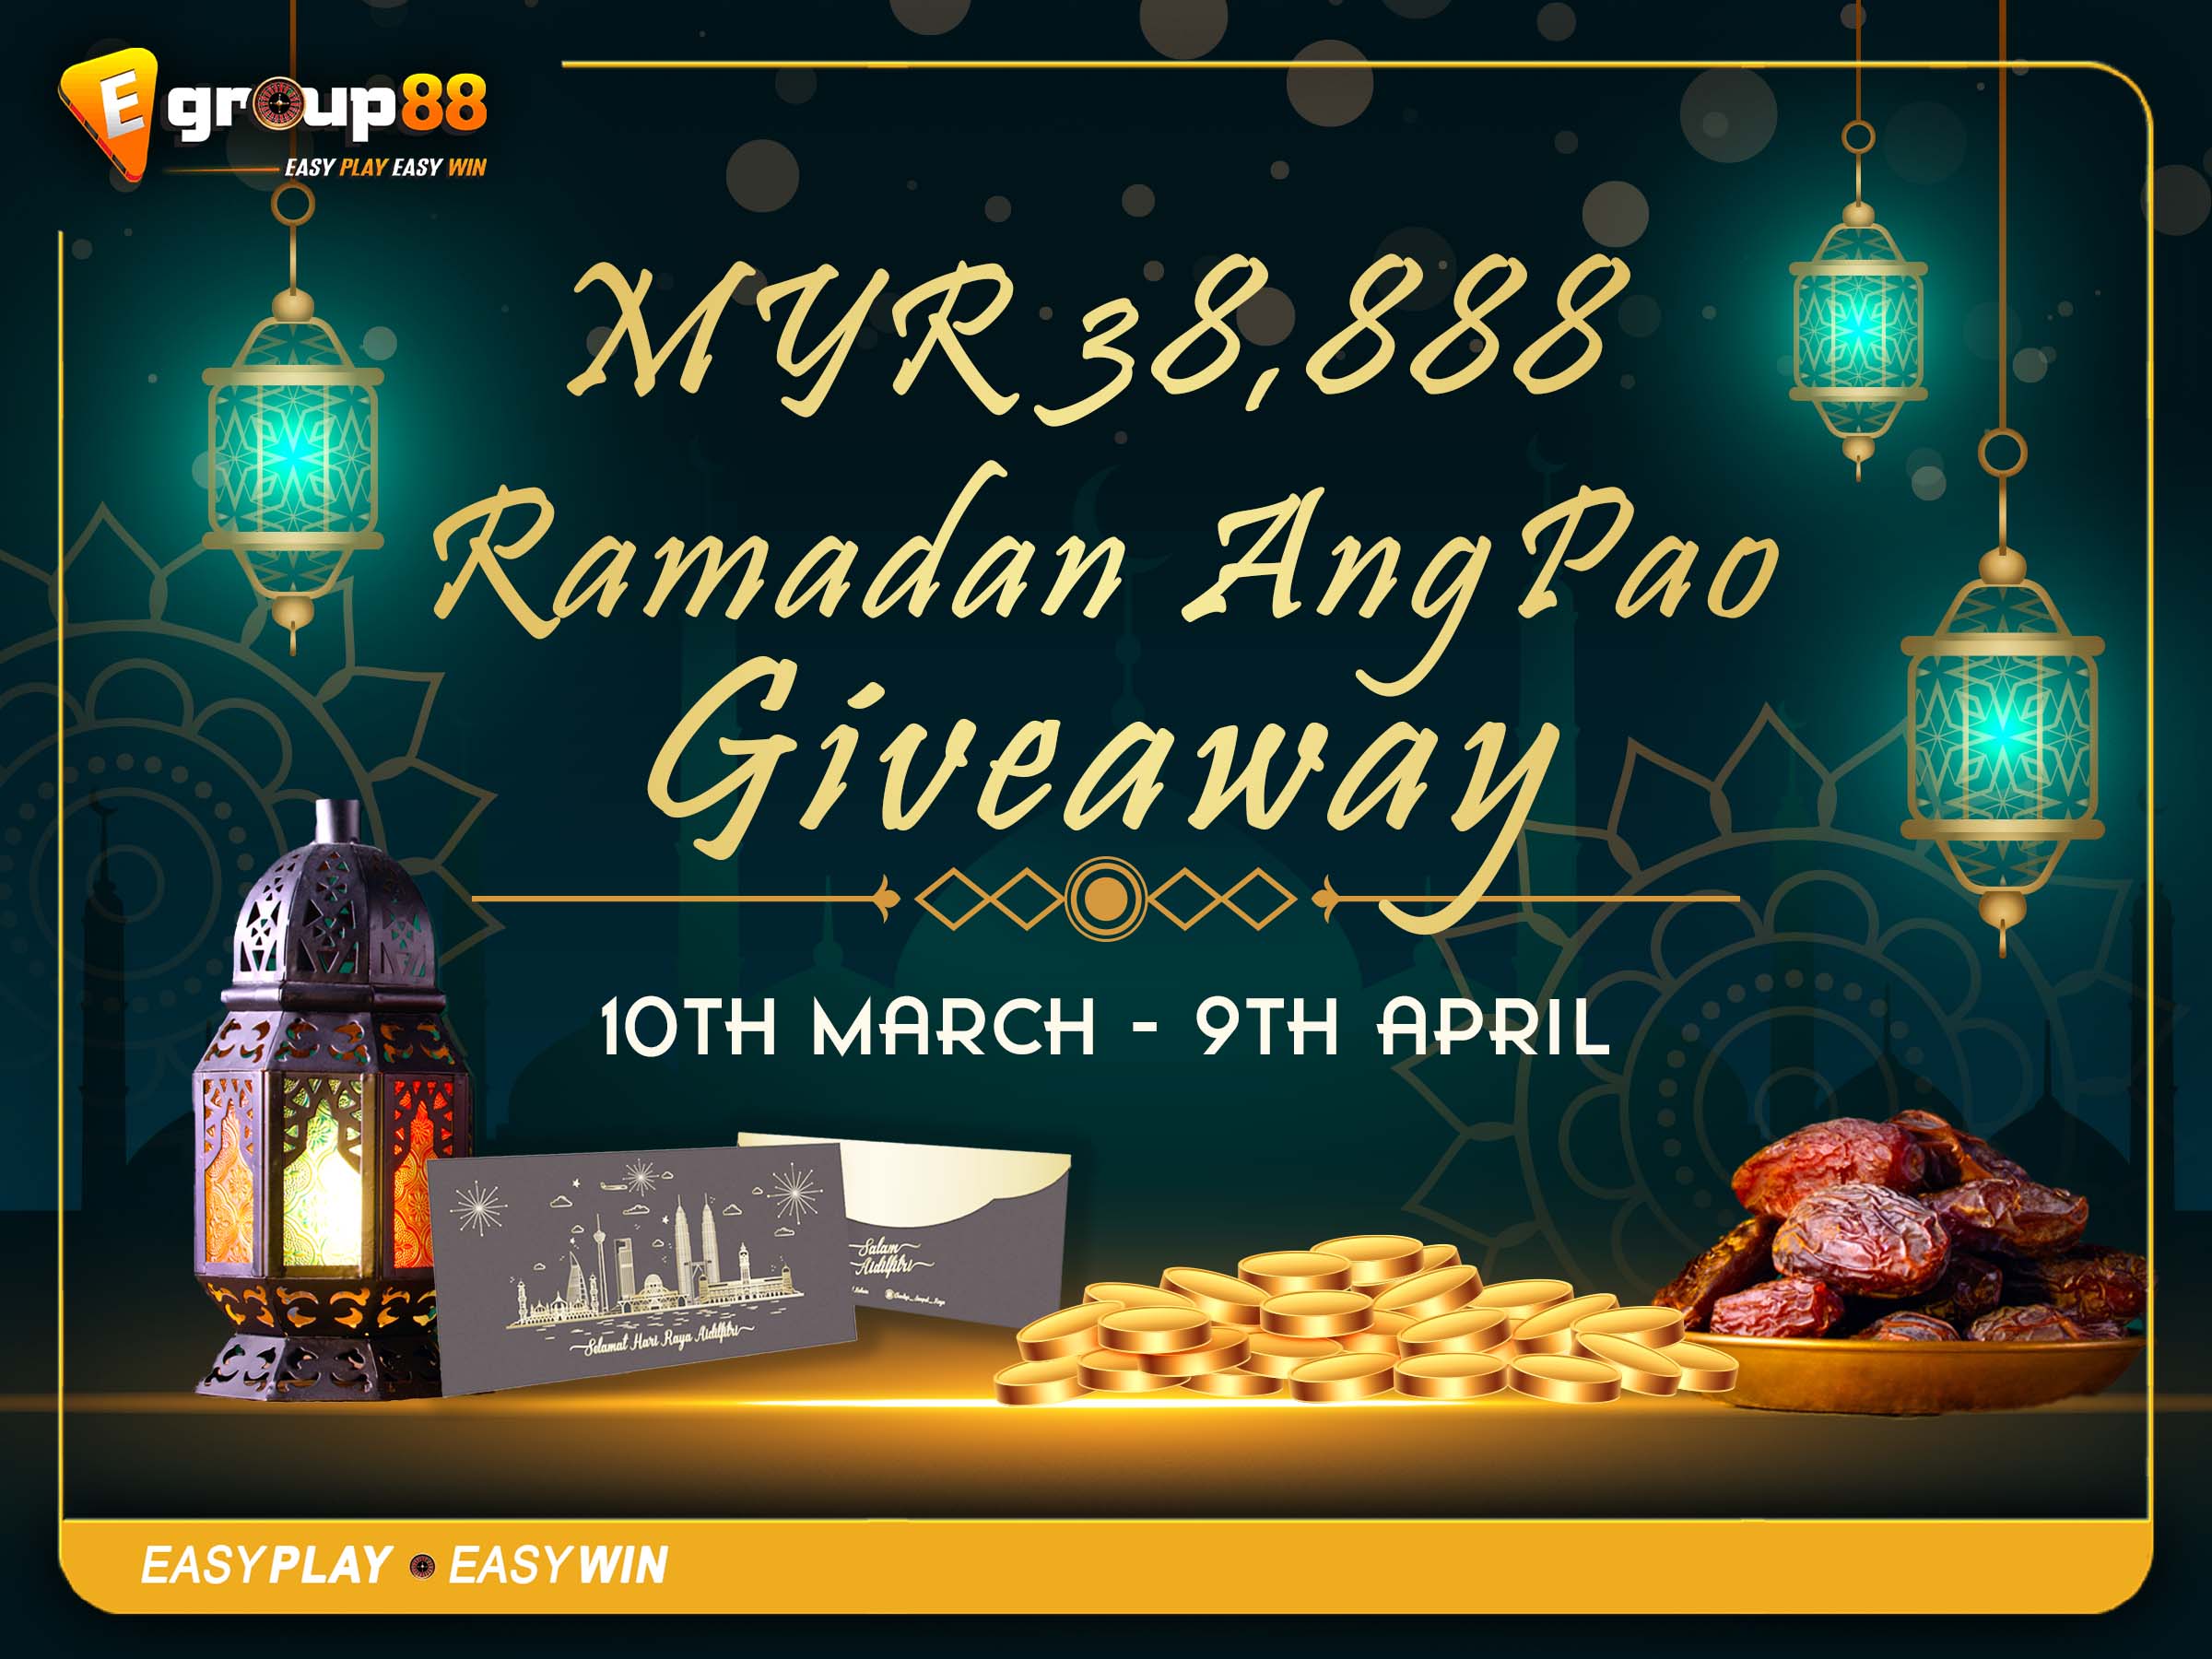 MYR38,888 Ramadan AngPao Giveaway